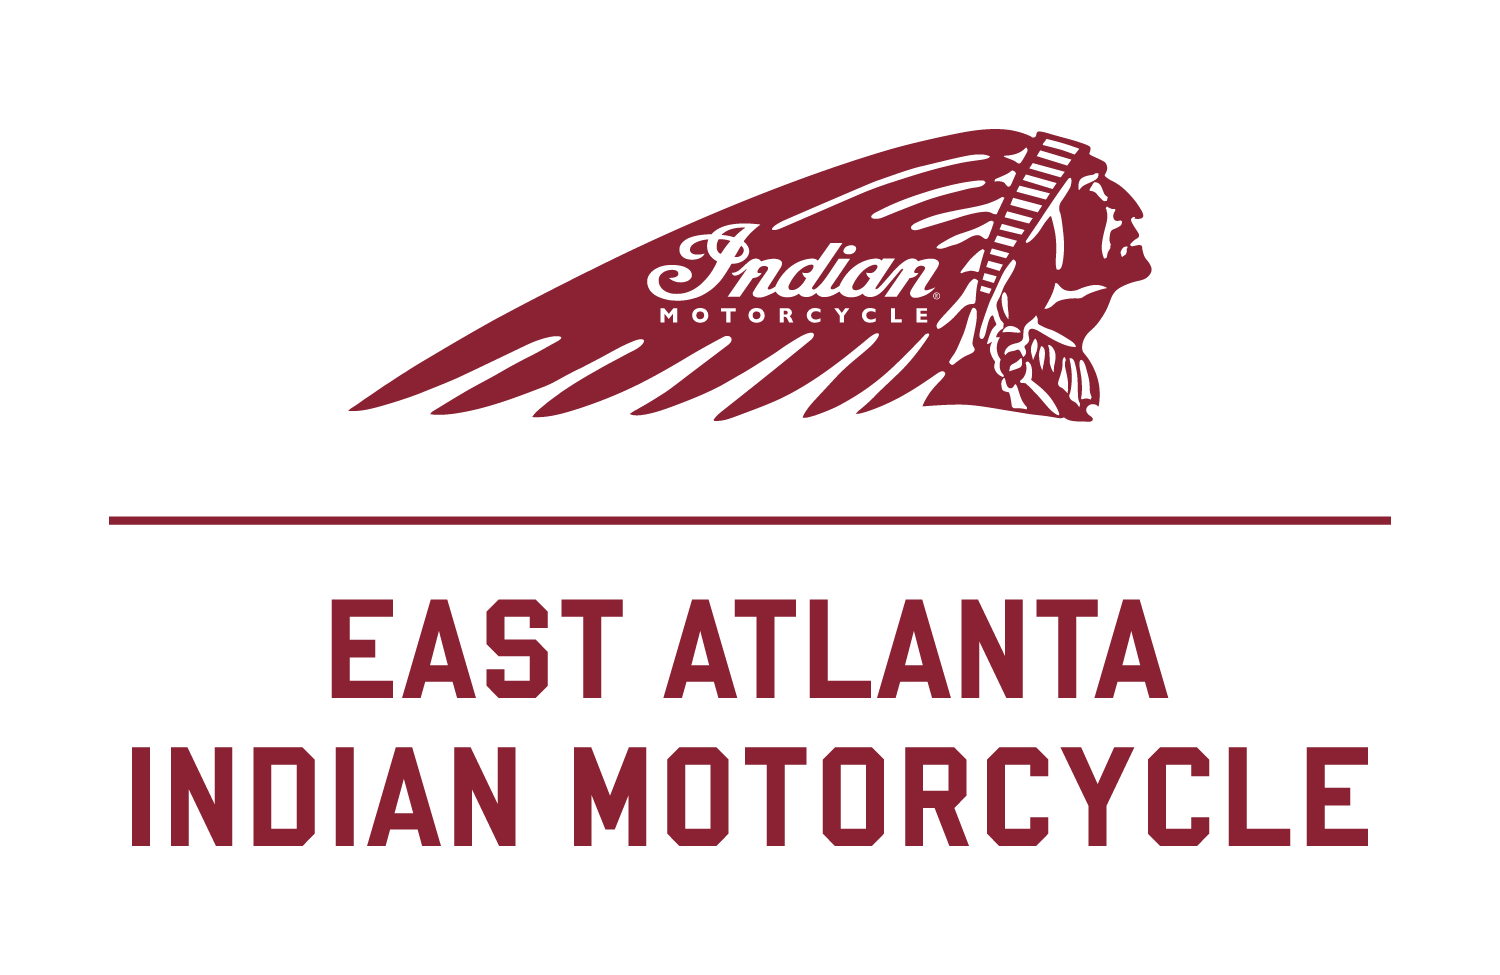 East Atlanta Indian Motorcycle